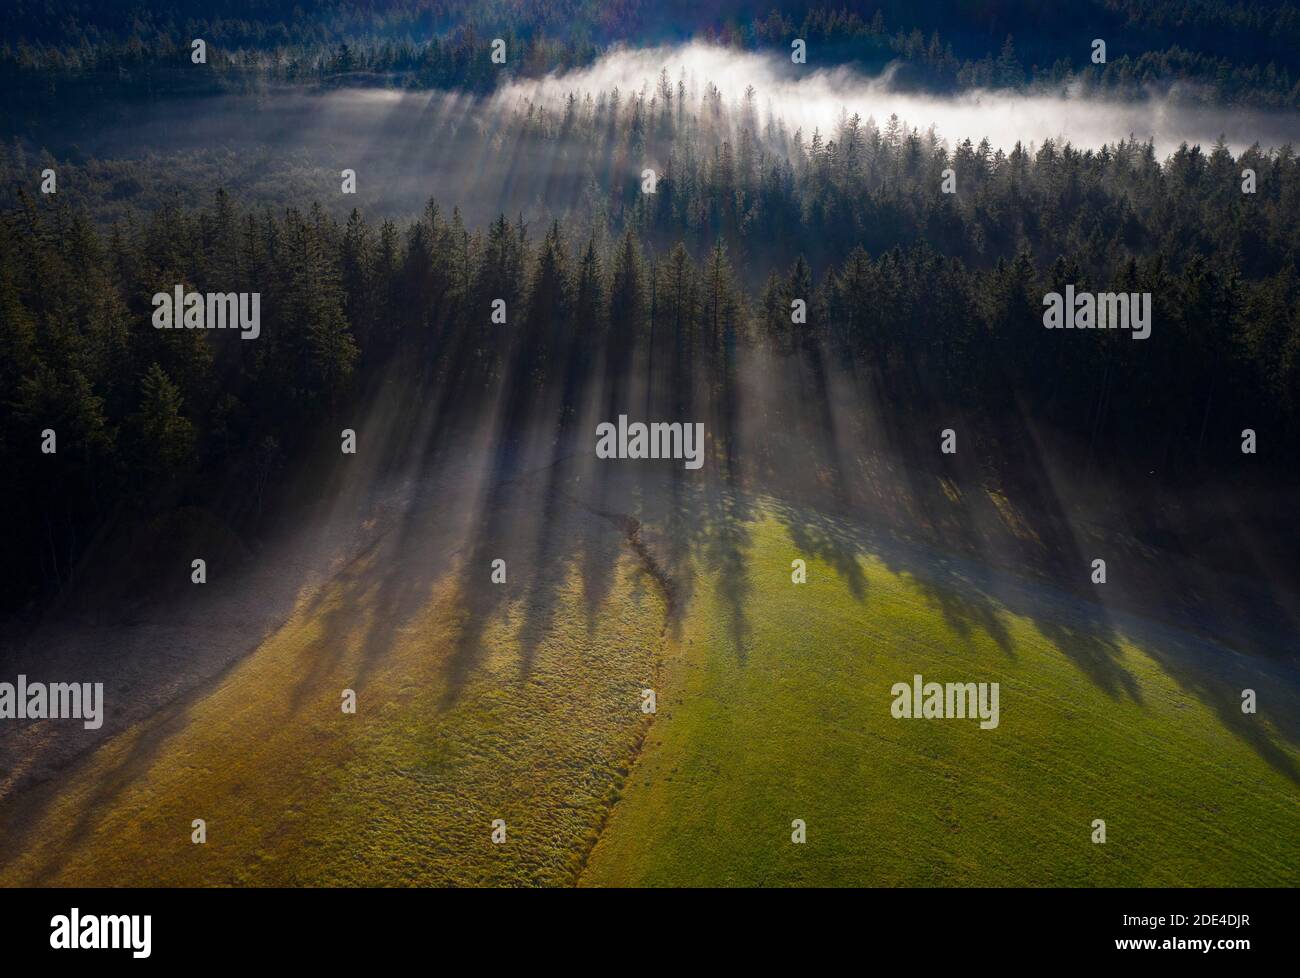 Forêt d'épinette dans le brouillard du matin avec ombre portée, d'en haut, photo de drone, vue aérienne, Mondseeland, Salzkammergut, haute-Autriche, Autriche Banque D'Images